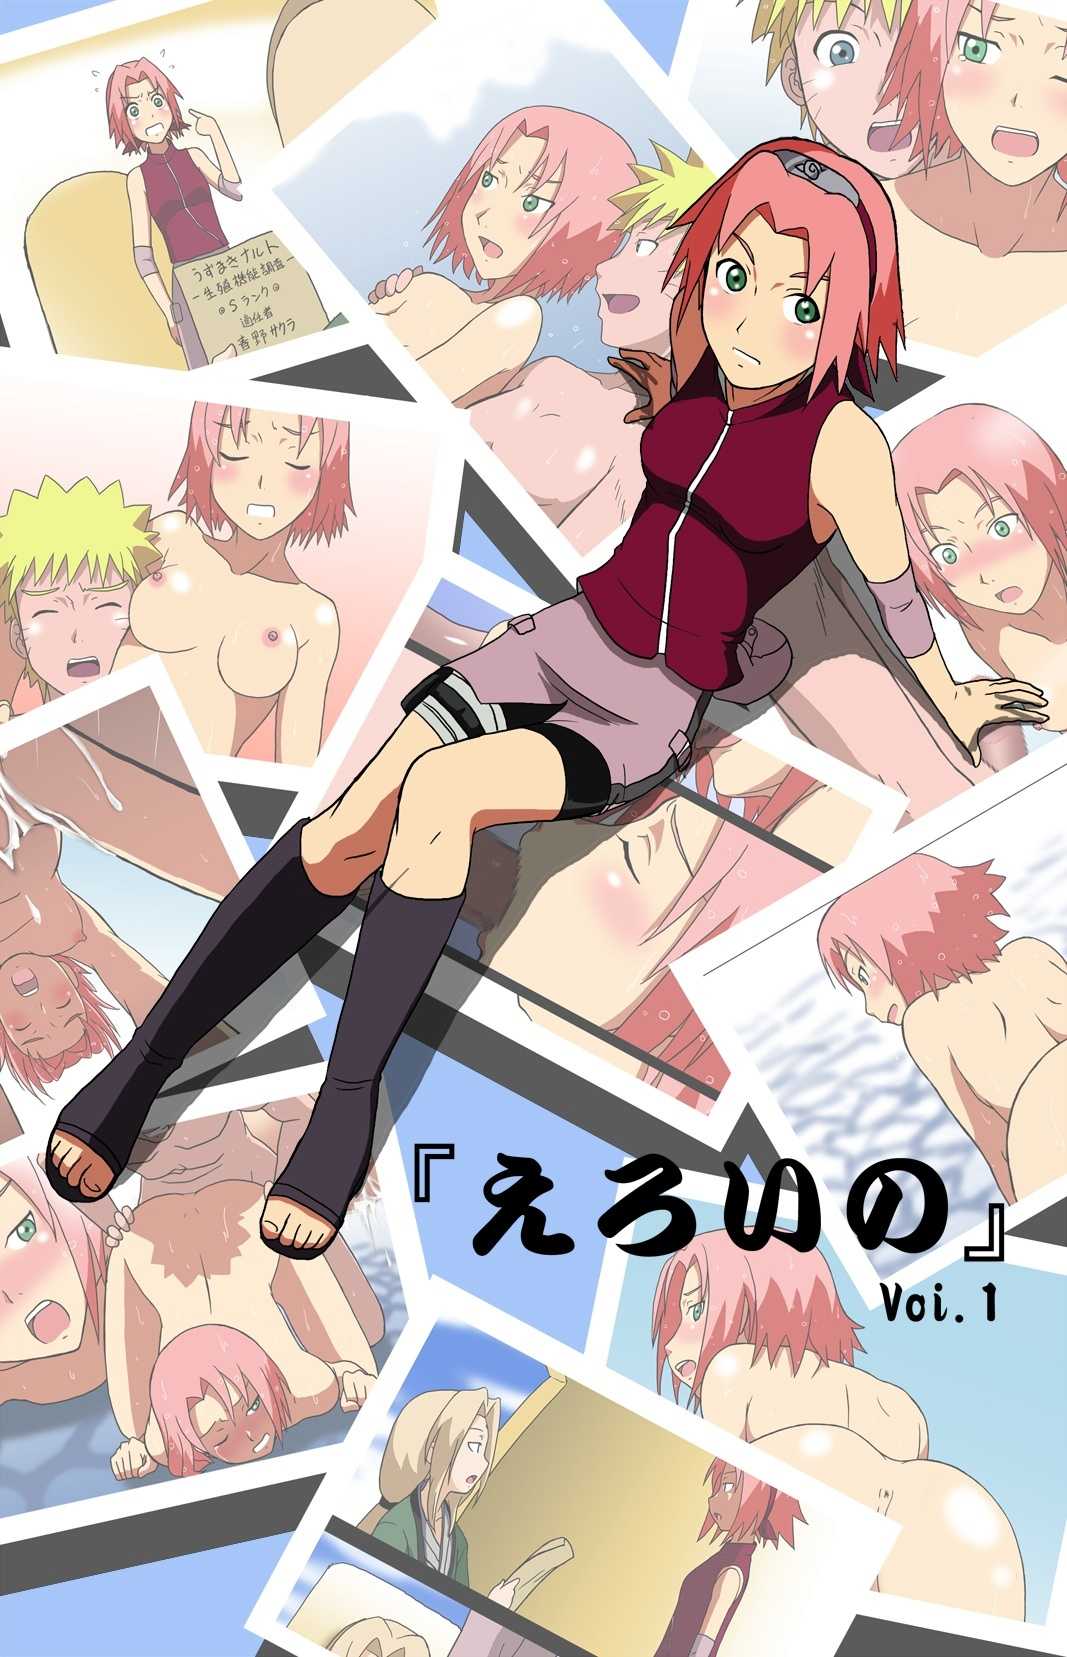 [kakkii dou] 「えろいの」 Vol.1 (Naruto) [かっきー堂] 「えろいの」 Vol.1 (Naruto)